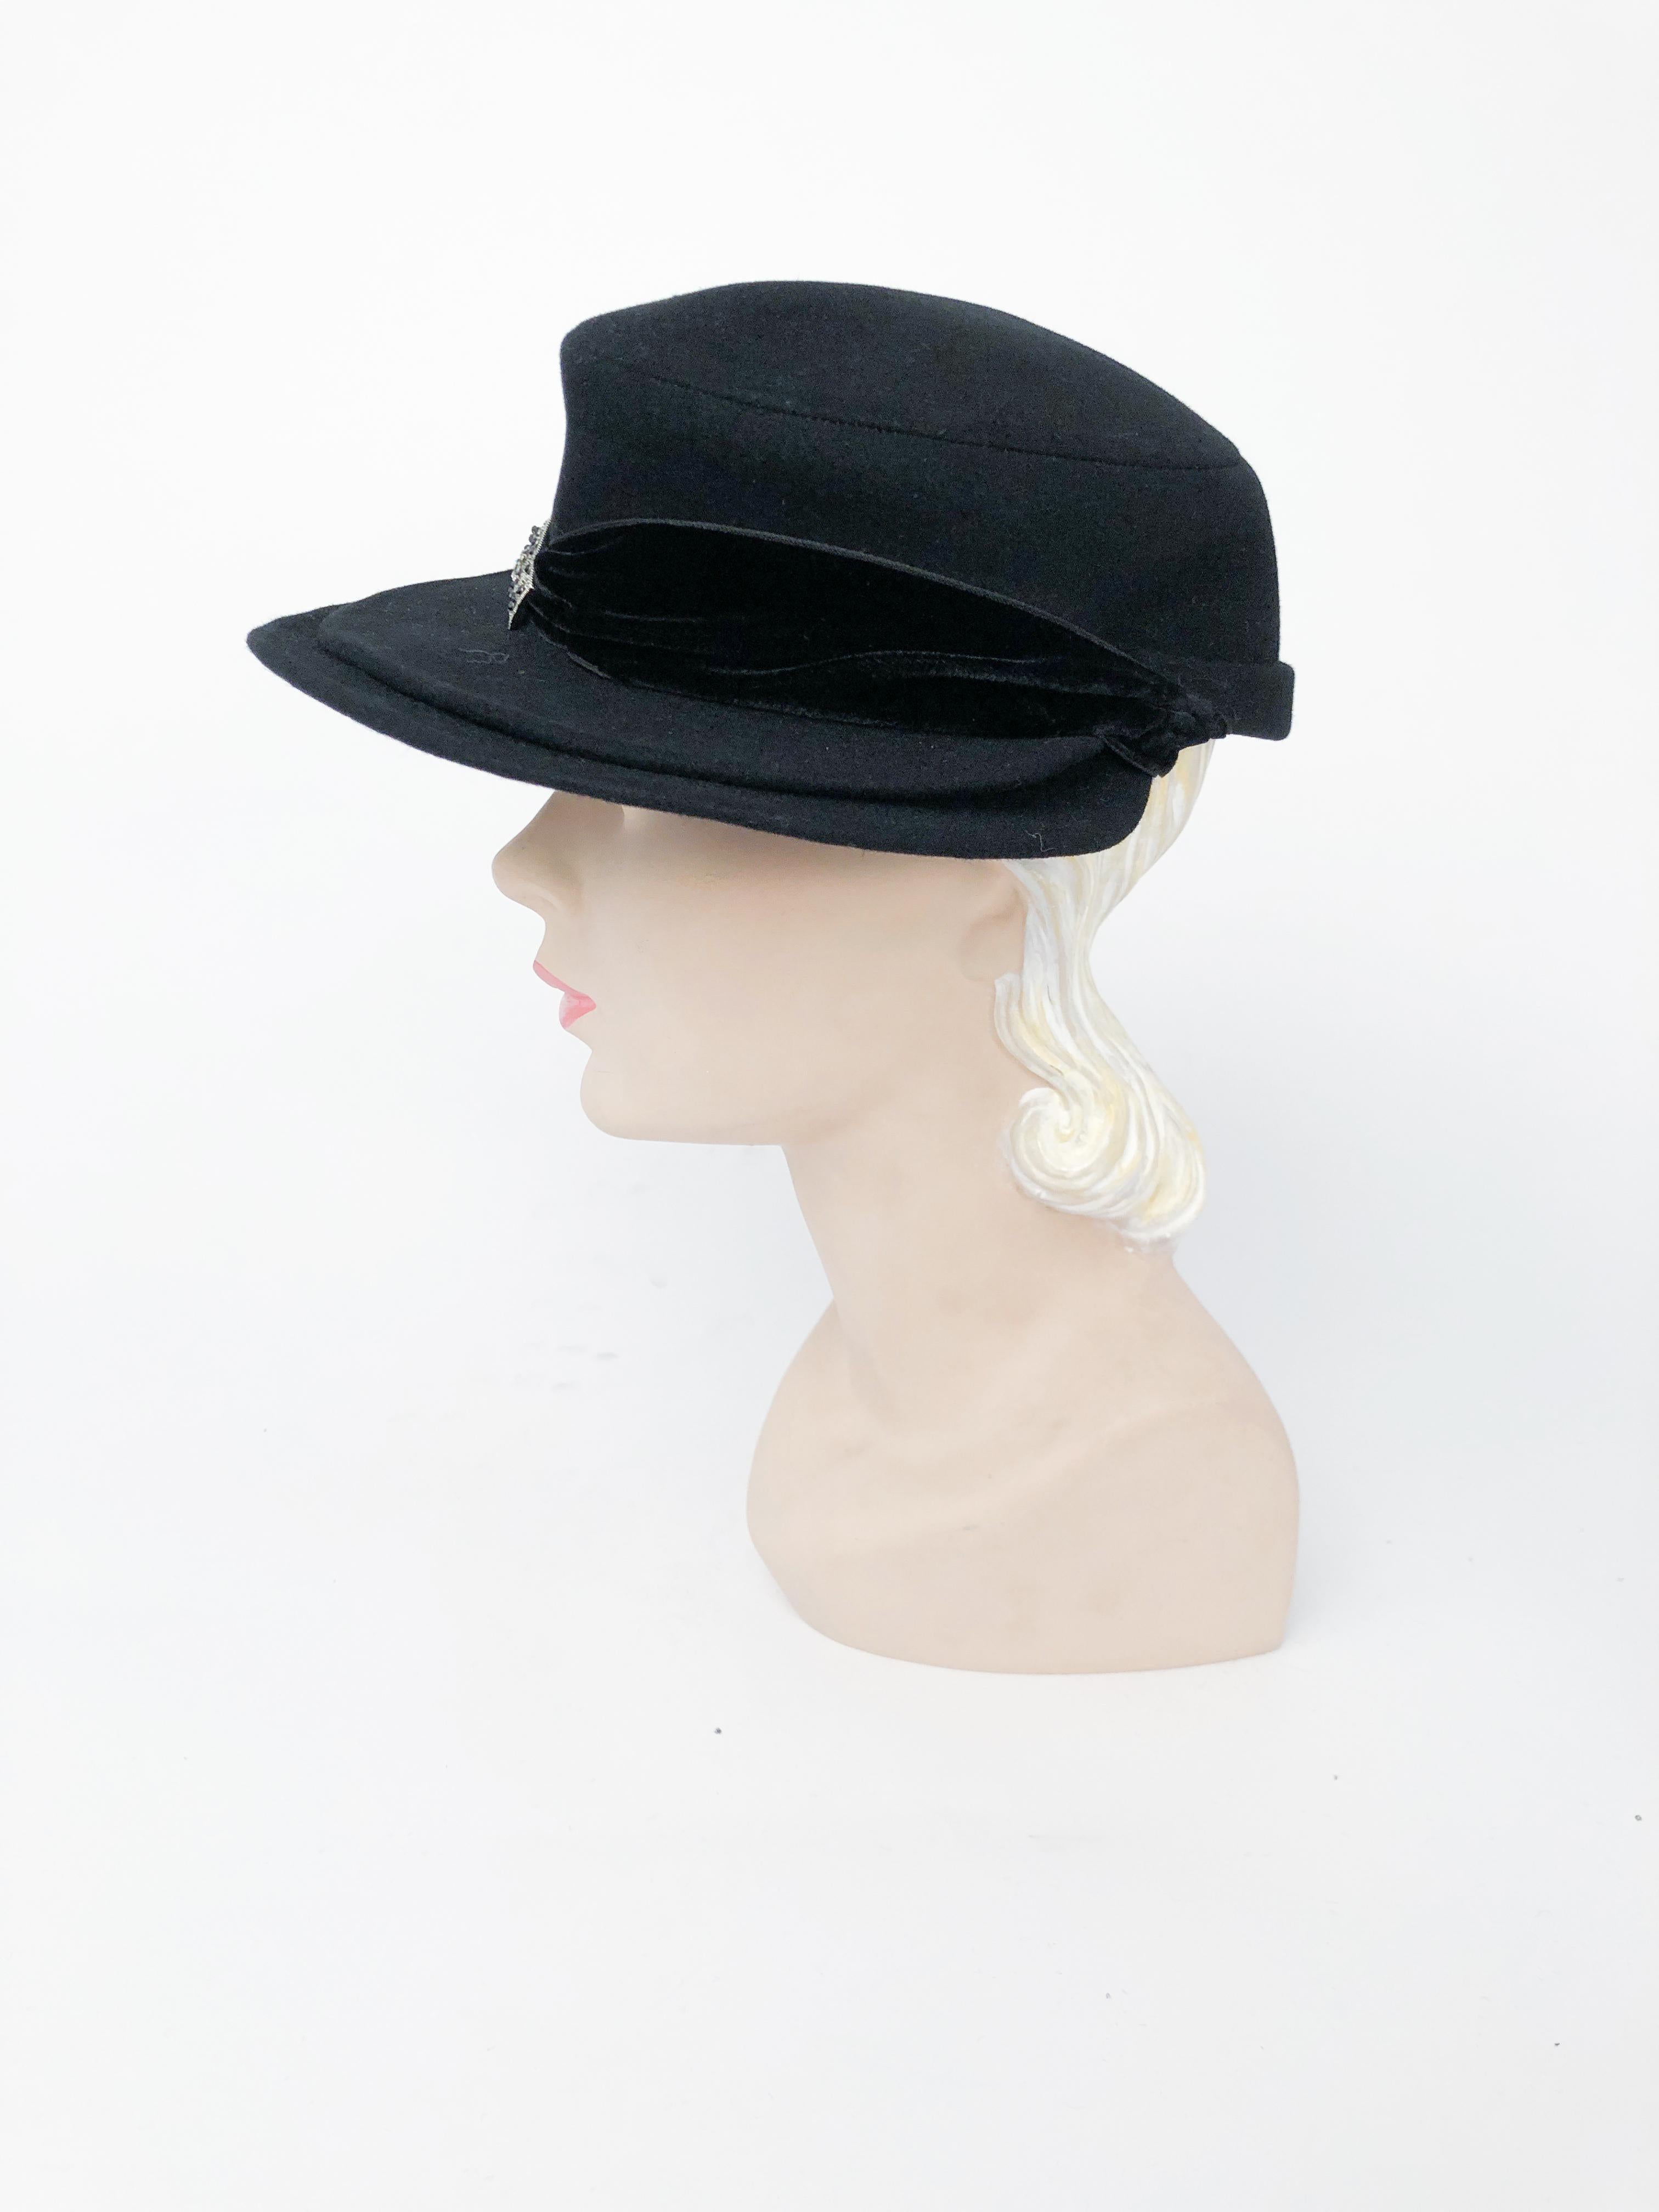 Schwarzer Hut aus Biberpelz mit doppeltem Schnabel, Samtband und Juwelenakzent.